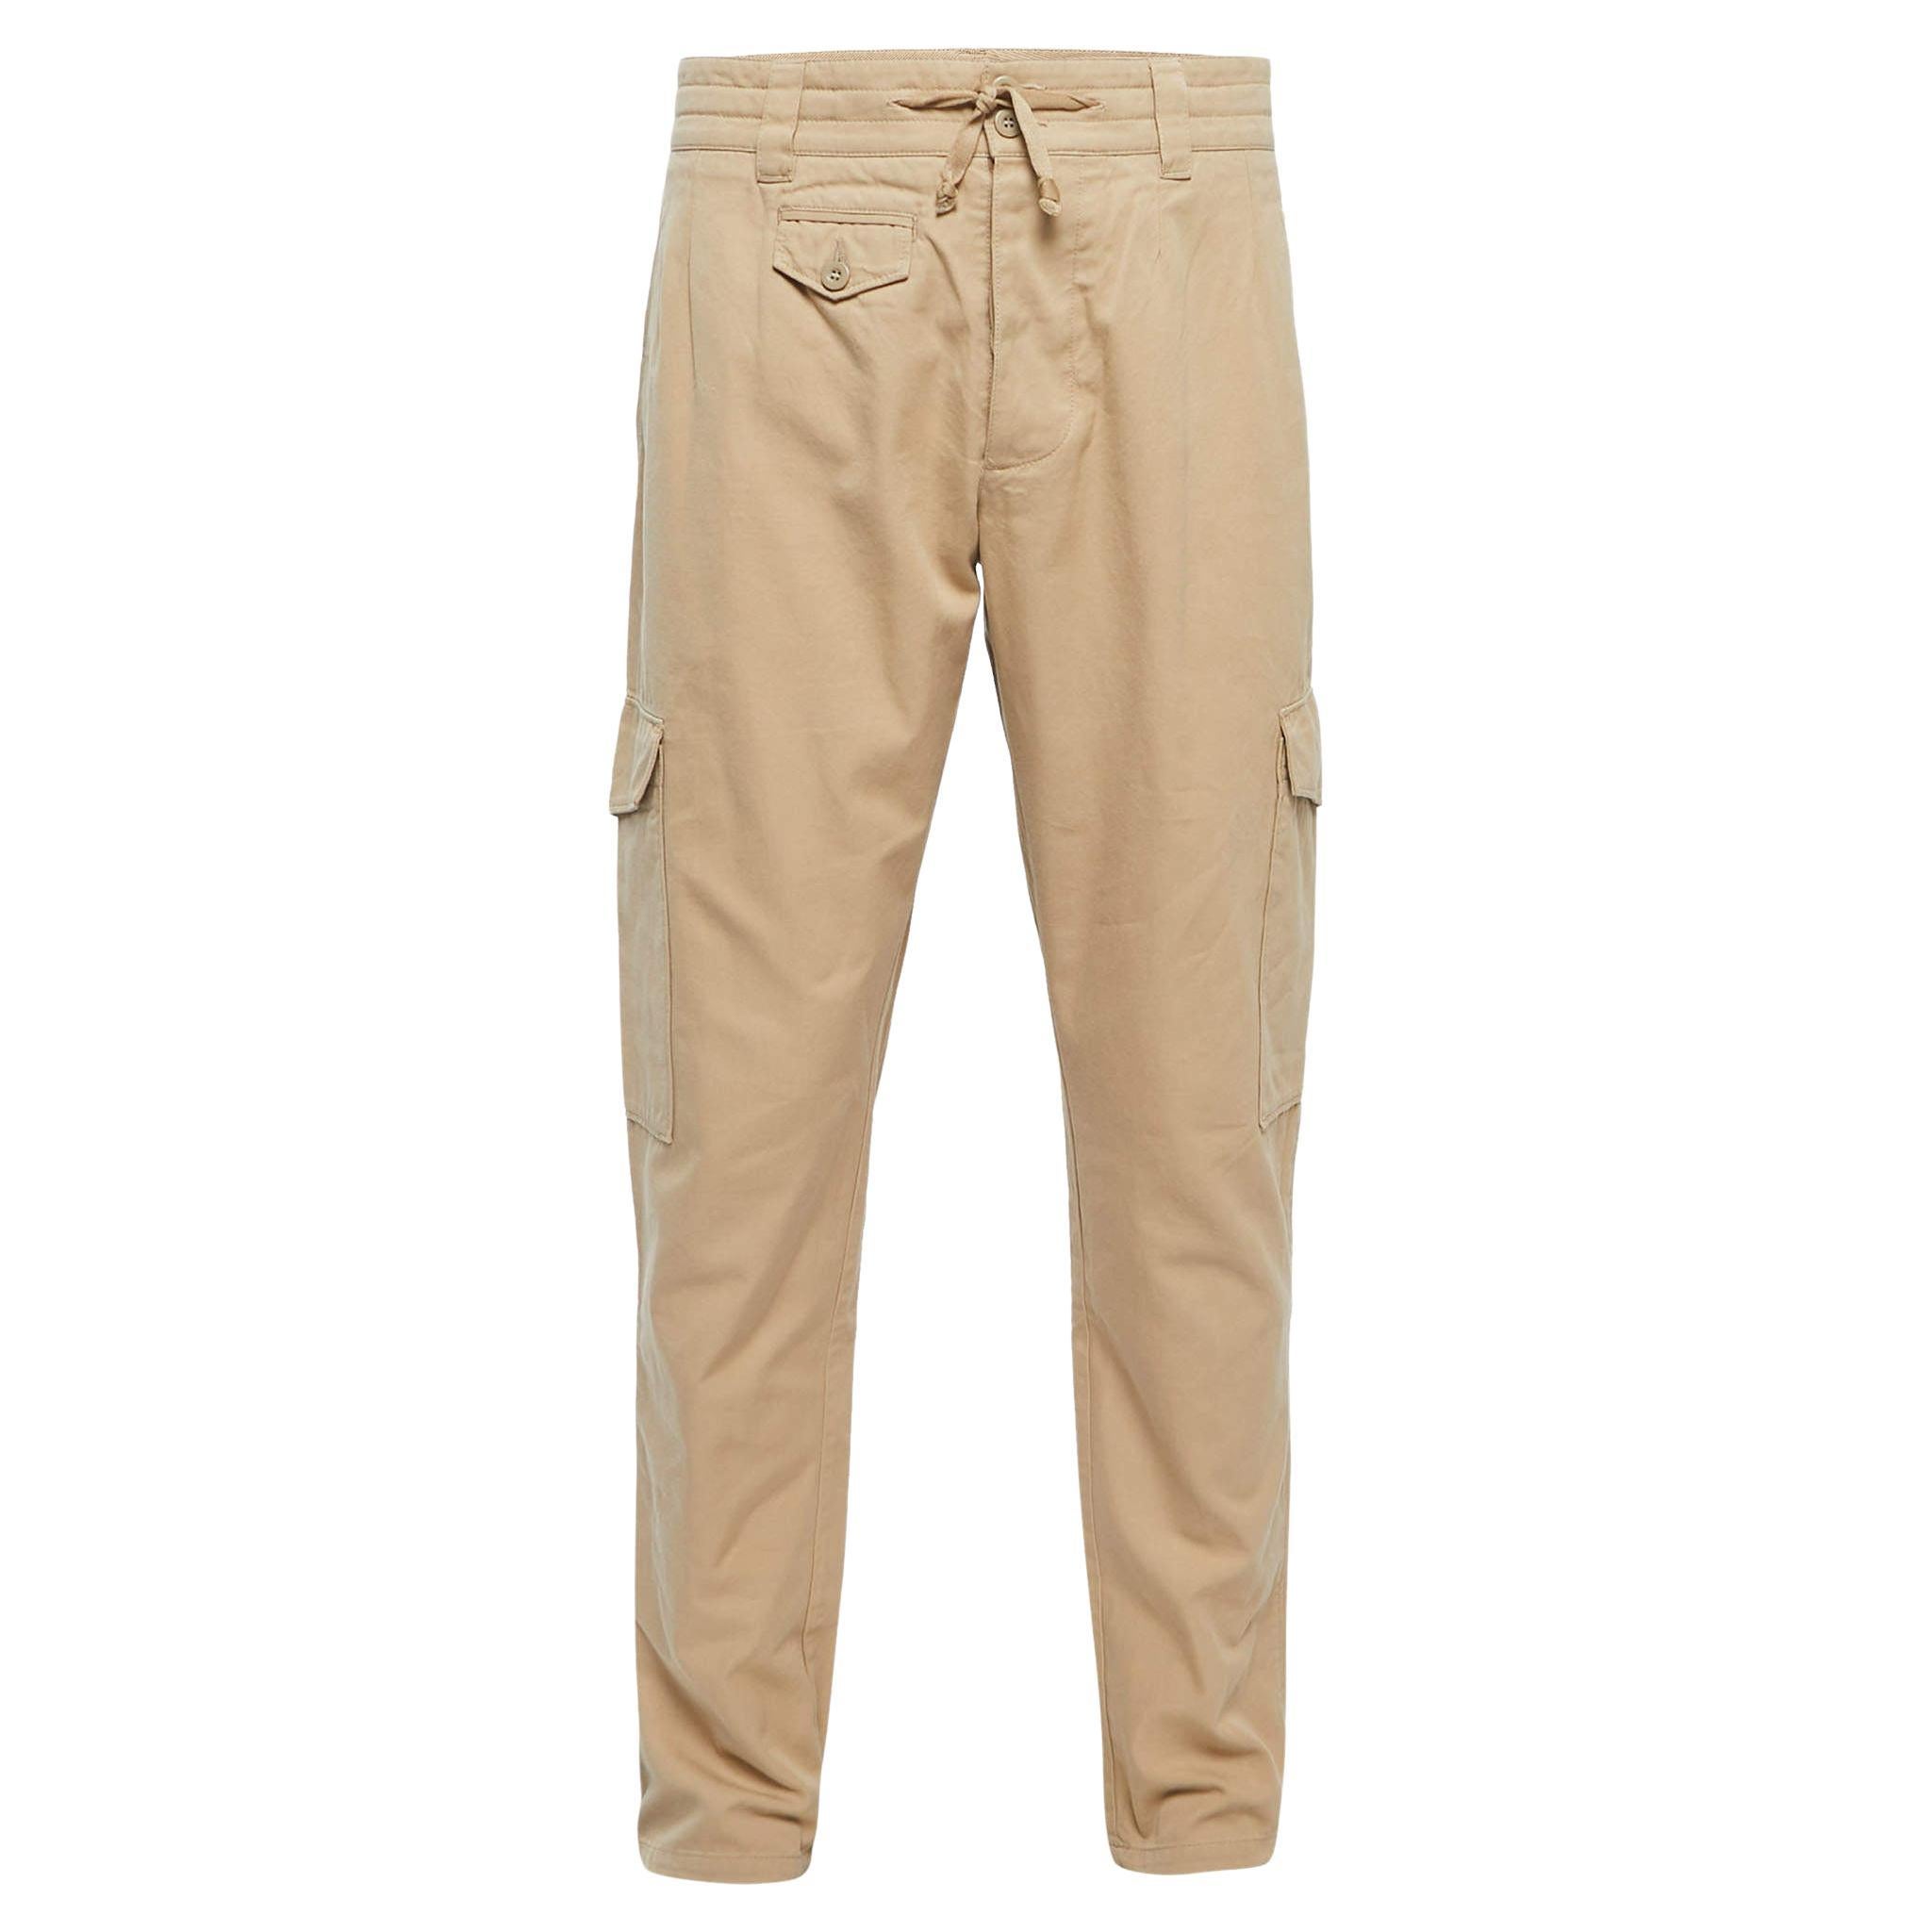 Dolce & Gabbana Beige Cotton Buttoned Cargo Pants XL Waist 38"